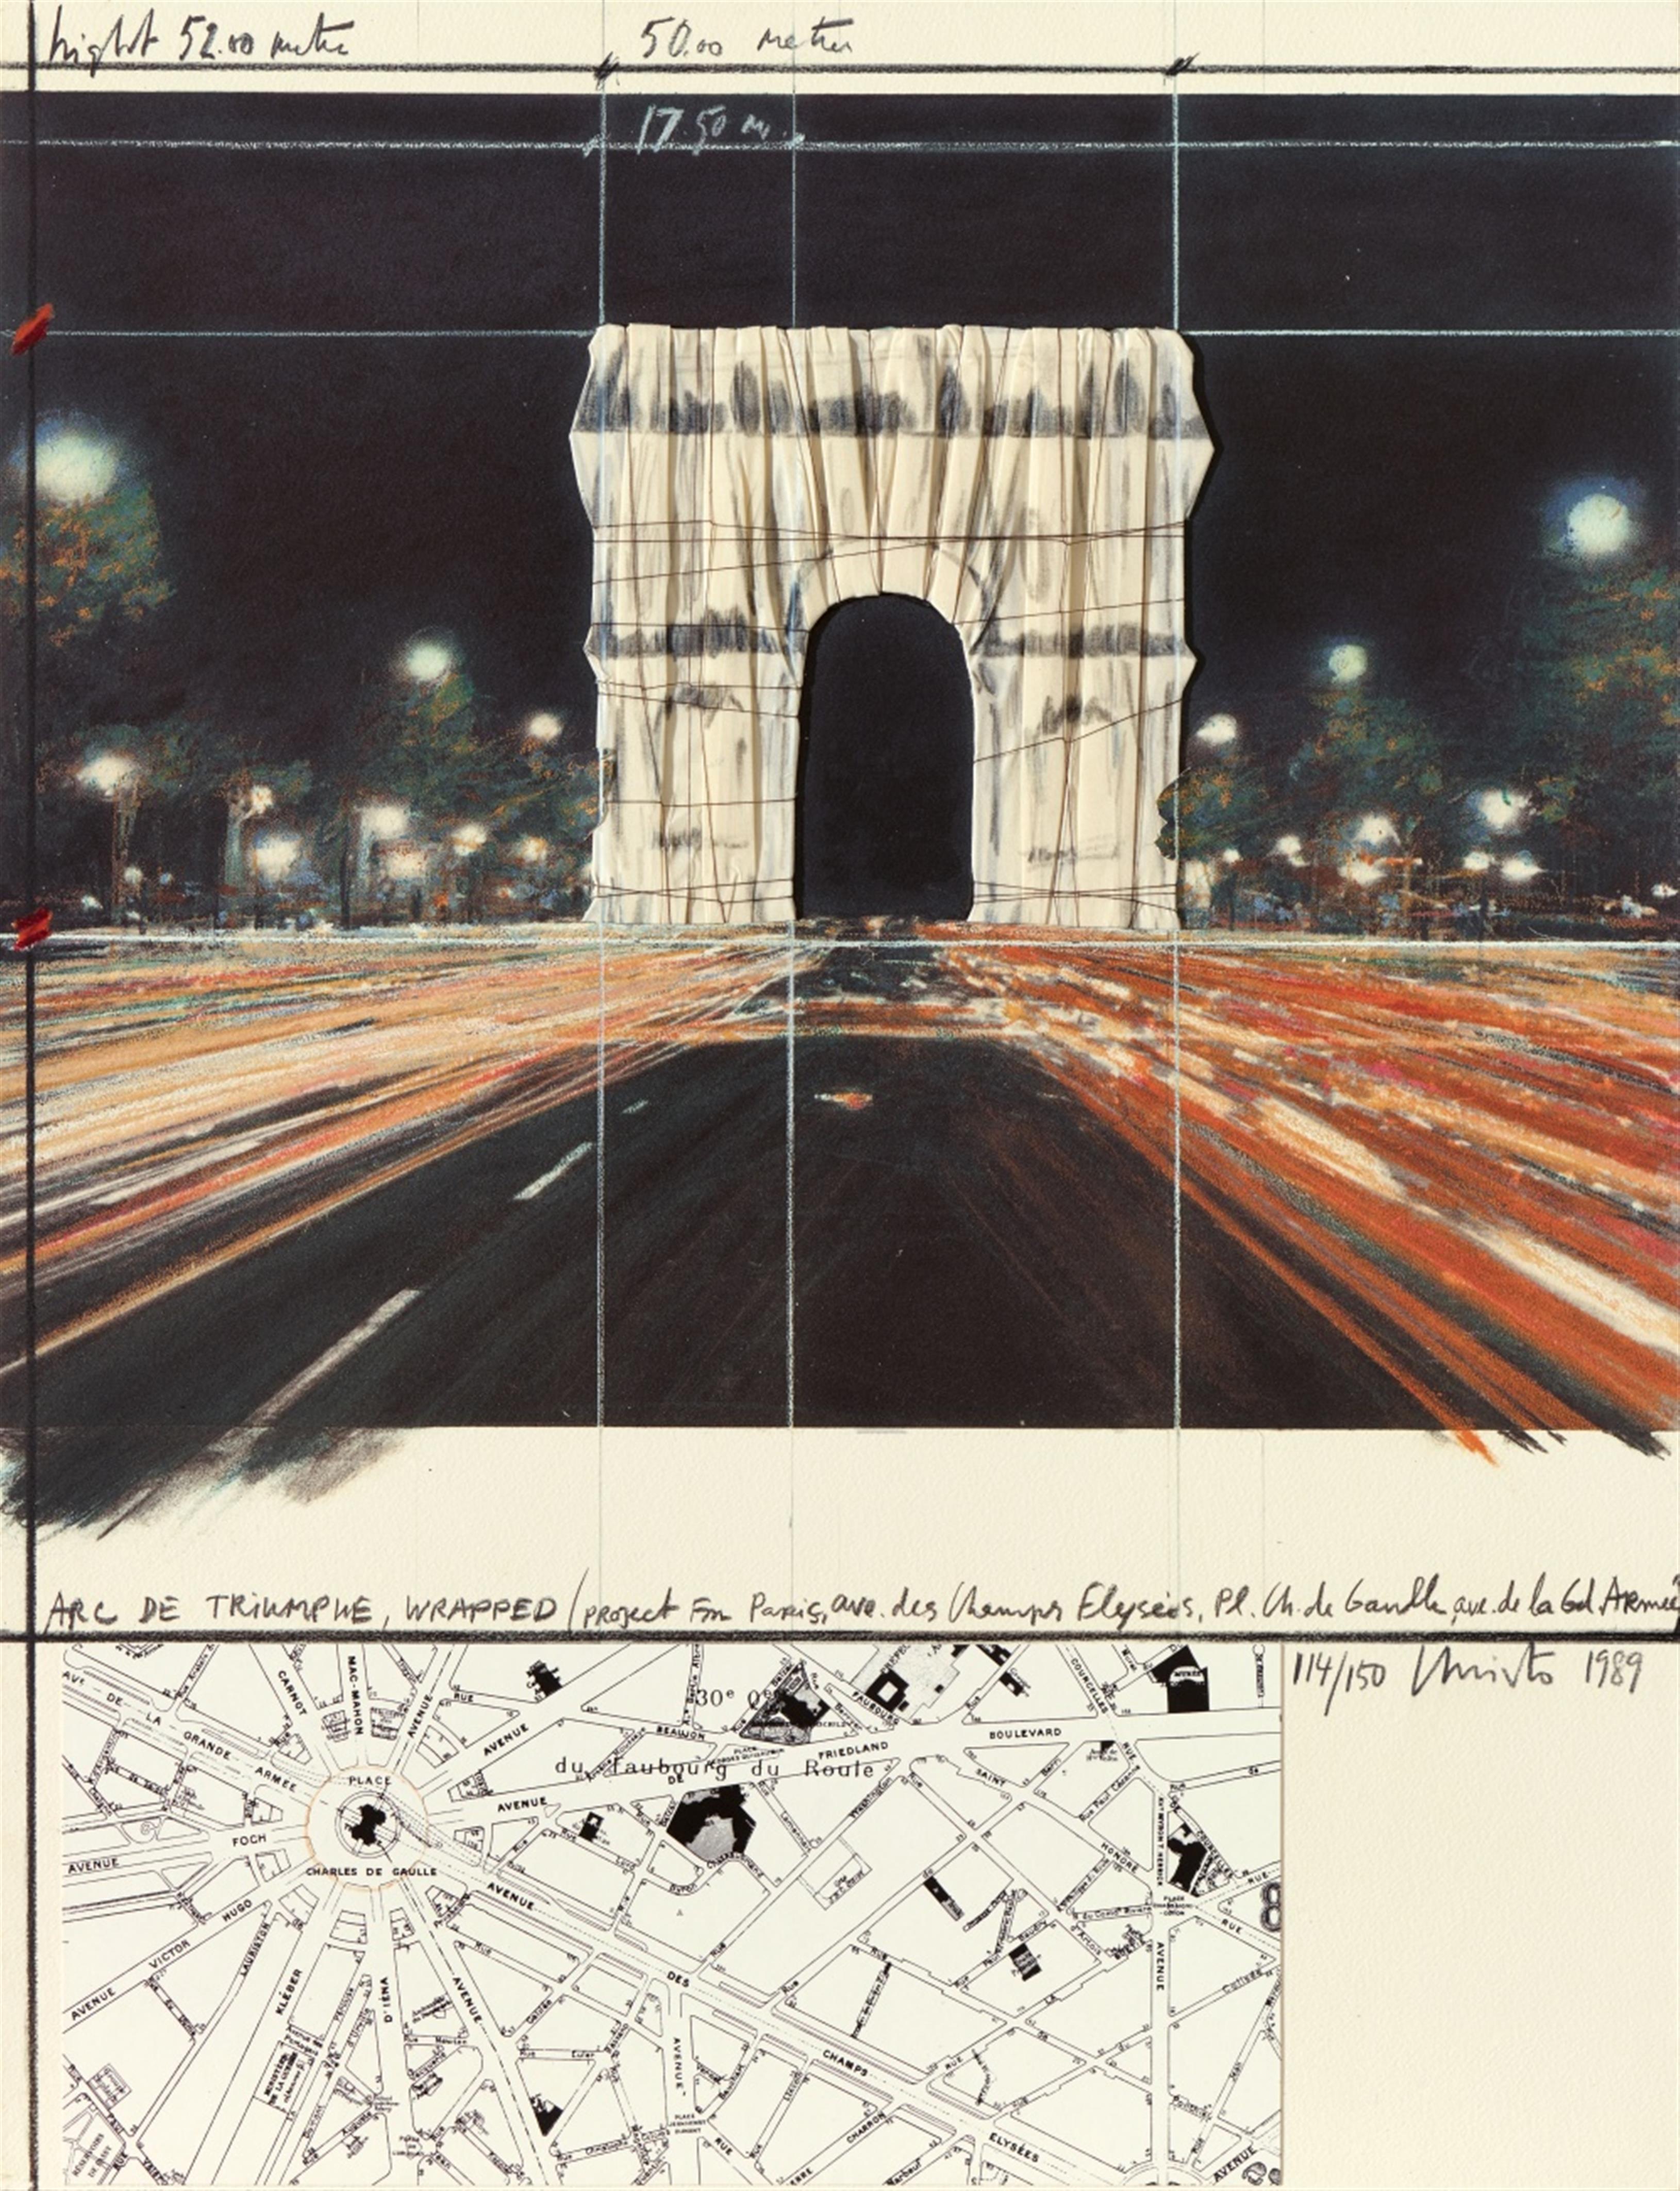 Christo - Arc de Triomphe, Wrapped, Project for Paris - image-1